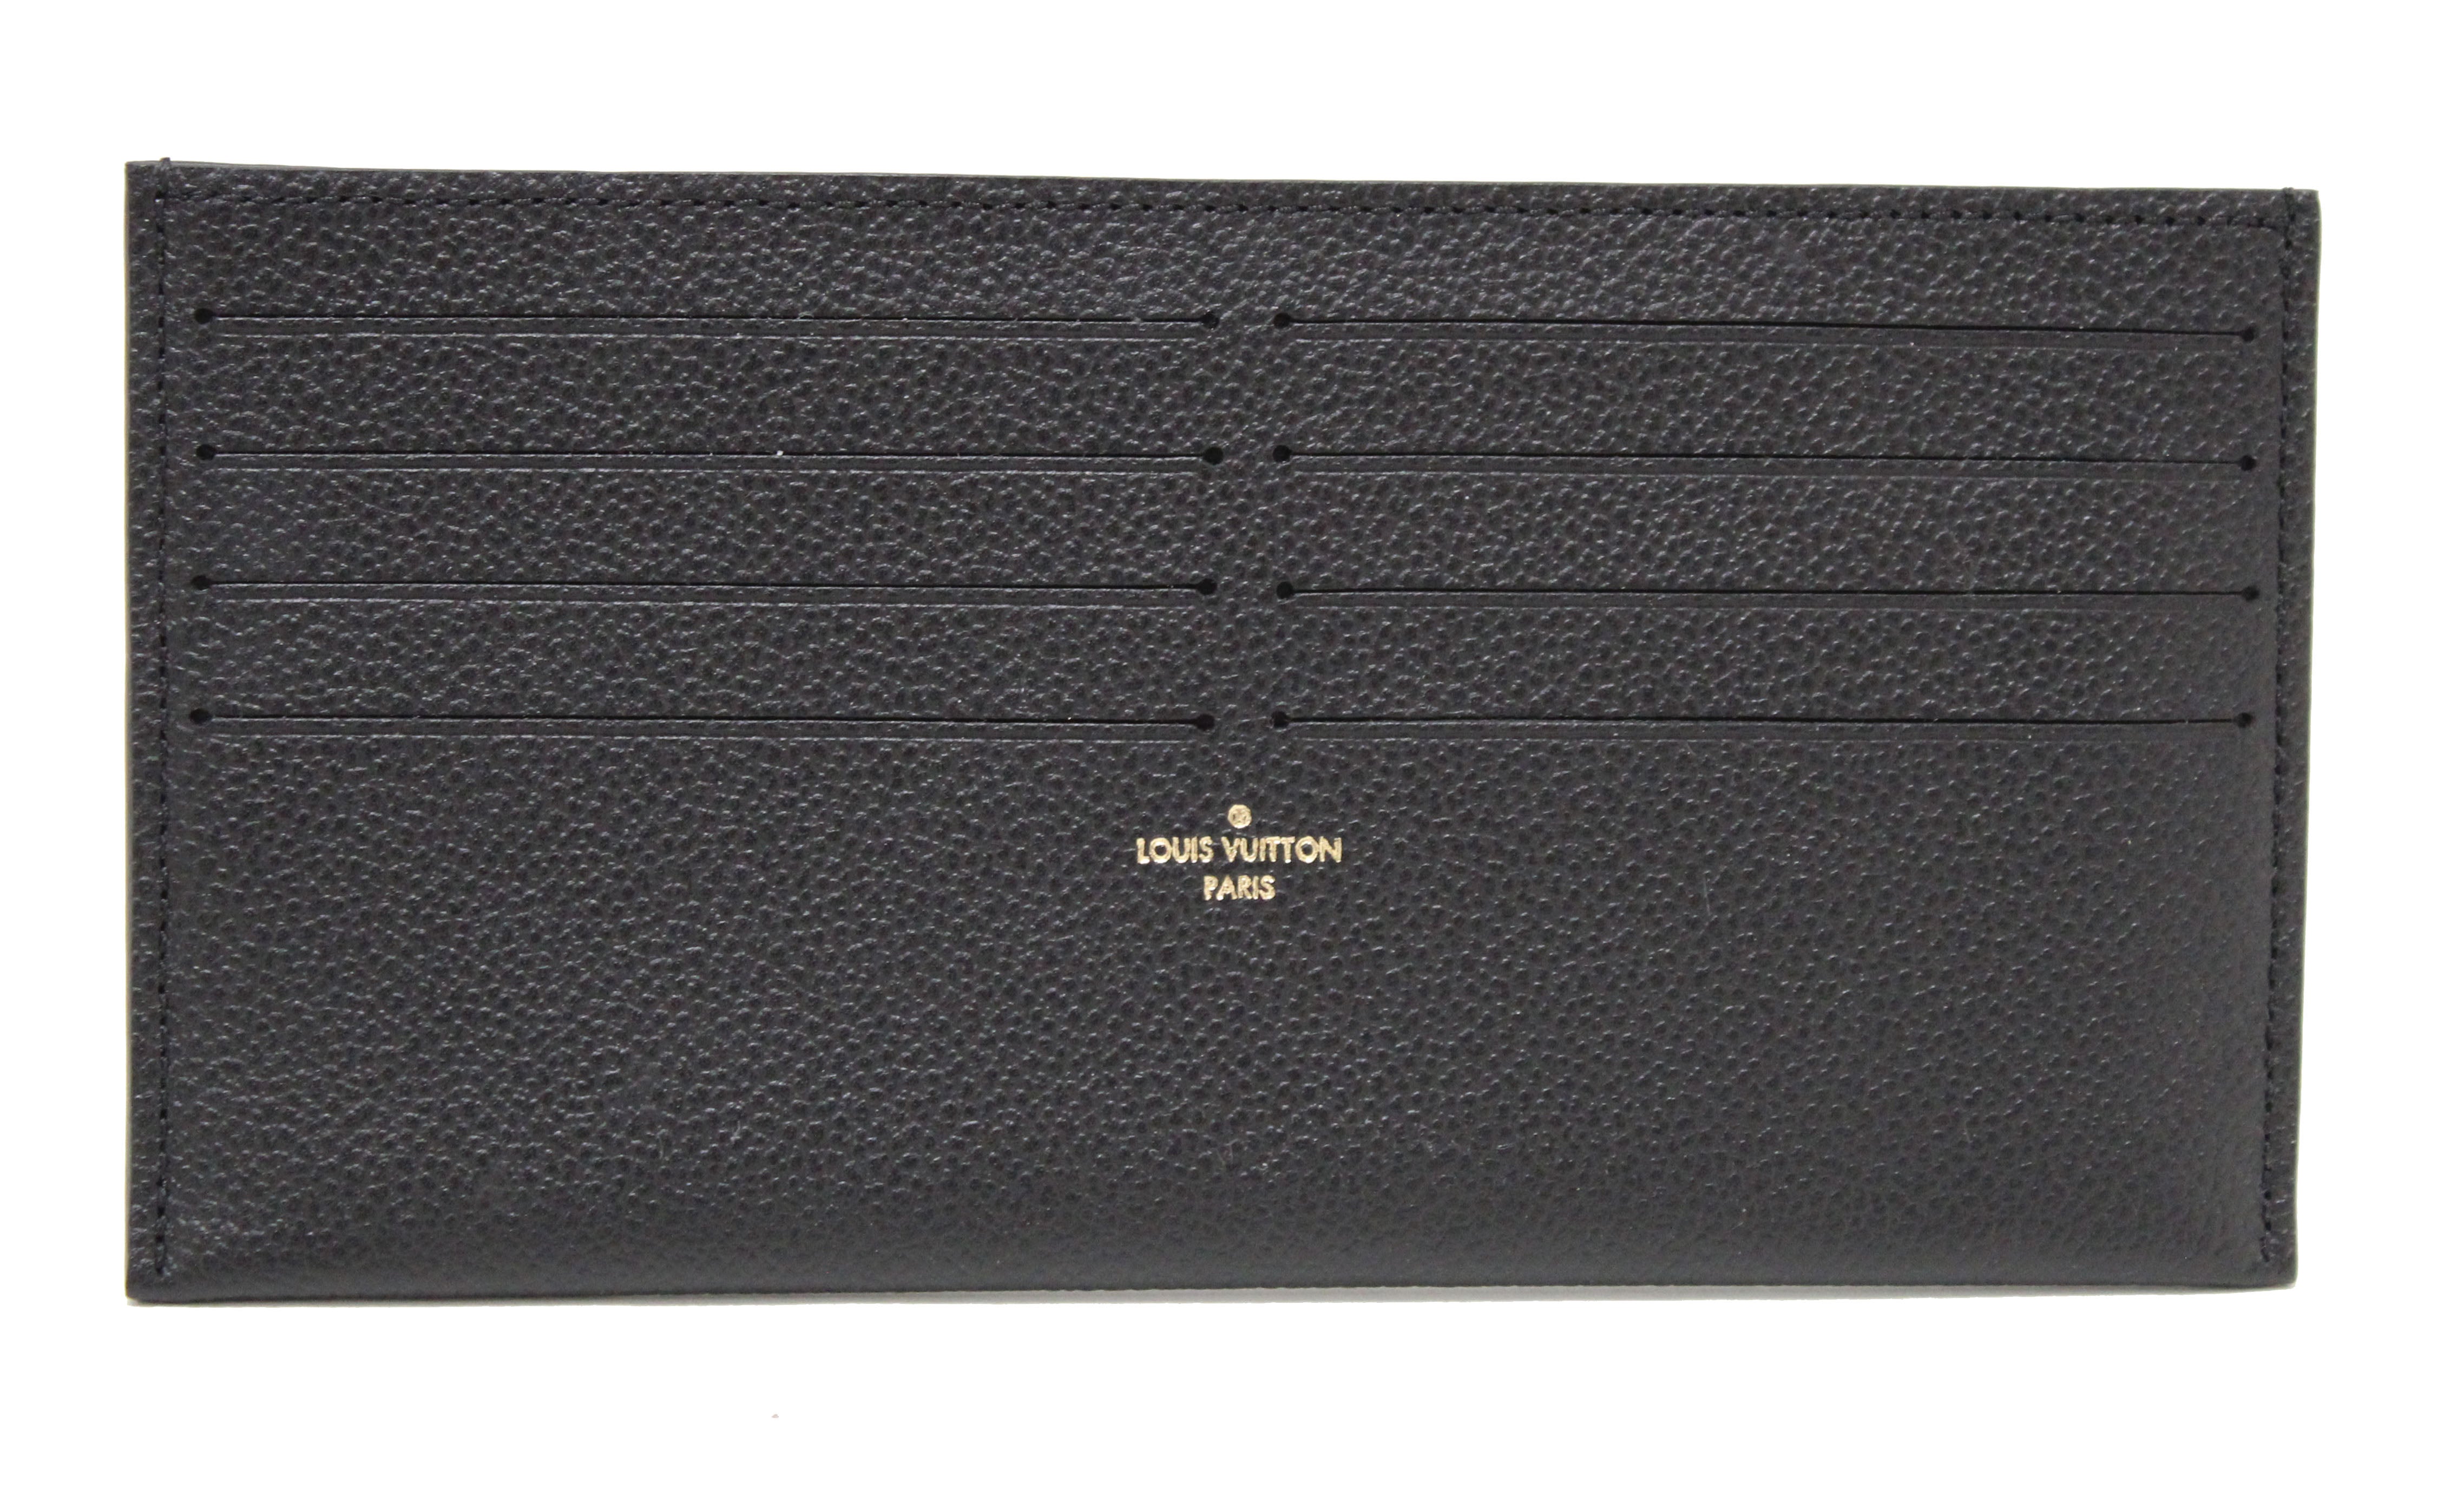 Authentic Louis Vuitton Black Monogram Empreinte Felicie Pochette Bag